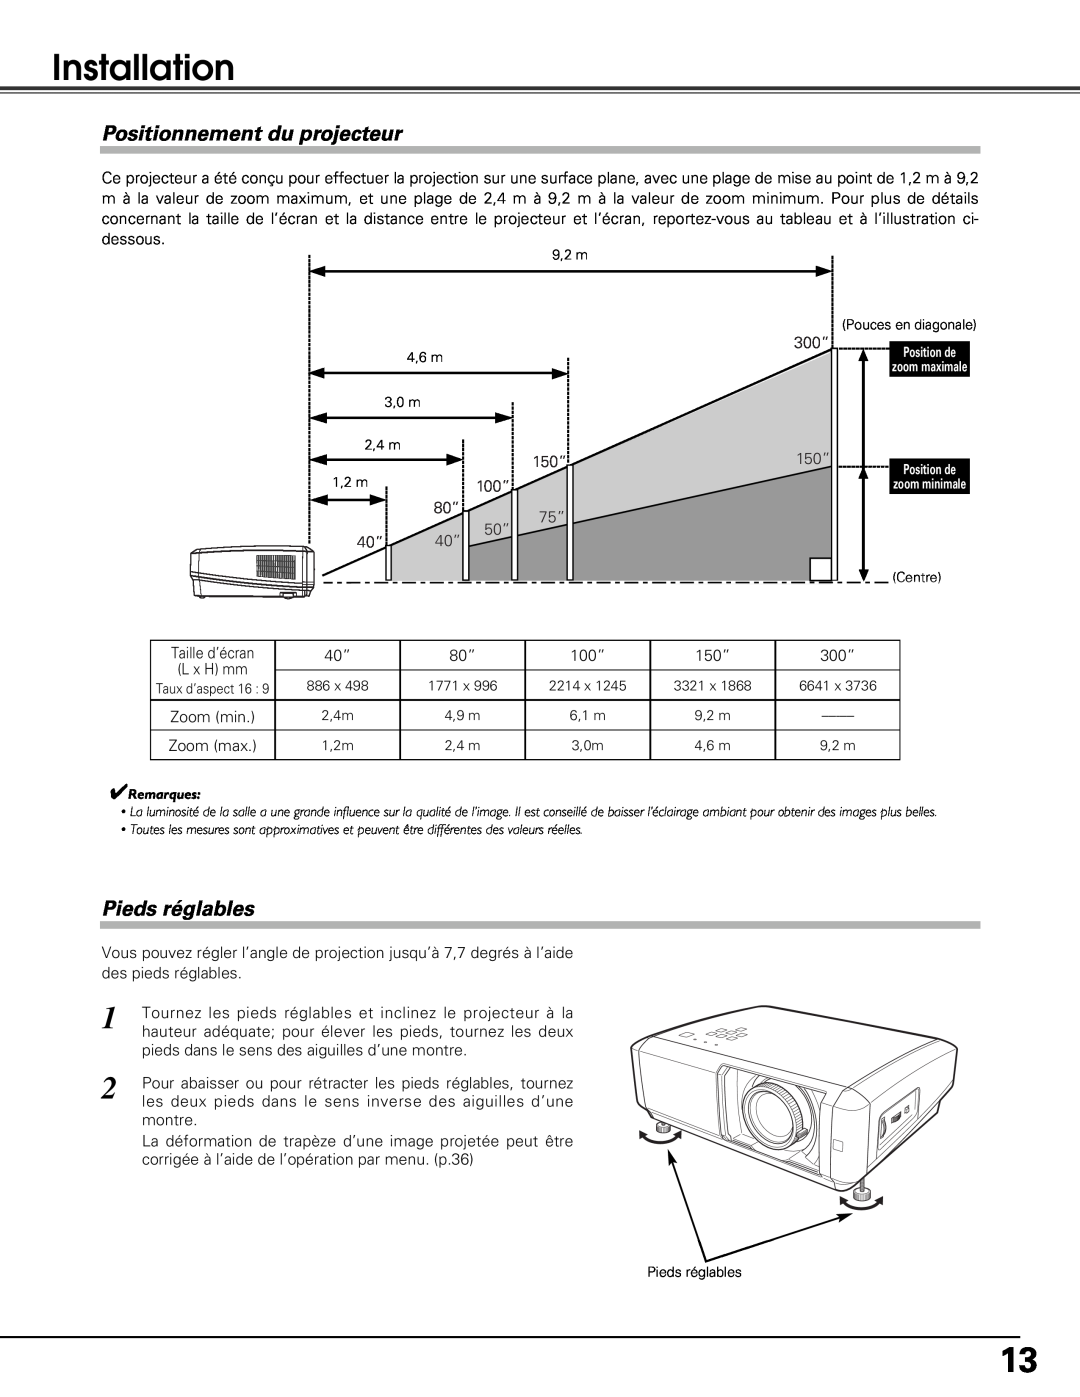 Sanyo PLV-Z5BK manual Installation, Positionnement du projecteur, Pieds réglables 